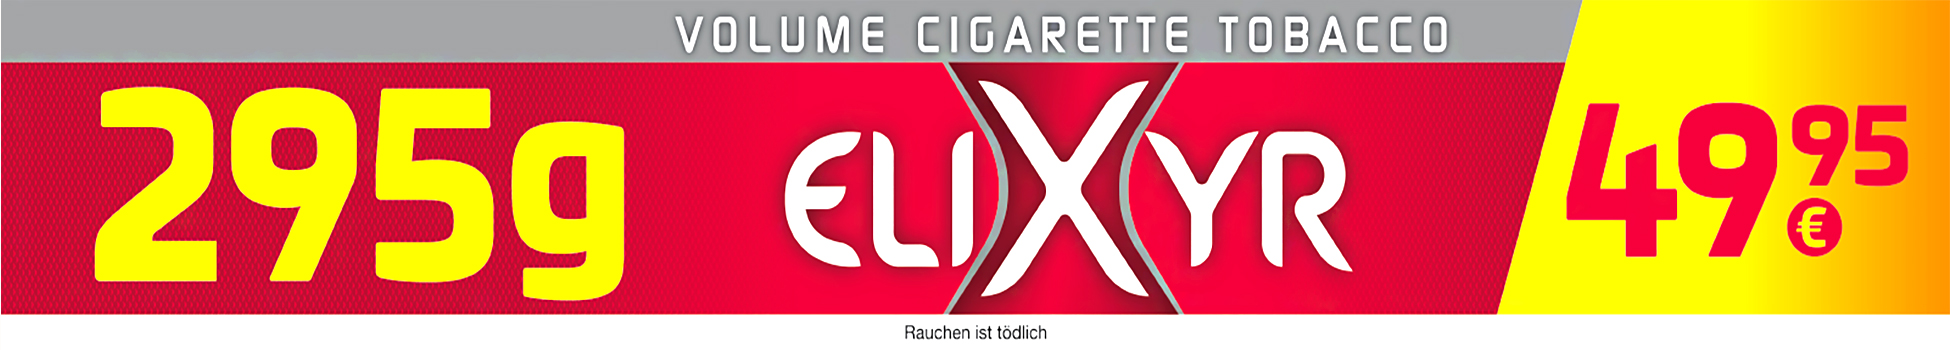 Elixyr Tabak zum stopfen und selber herstellen von Zigaretten